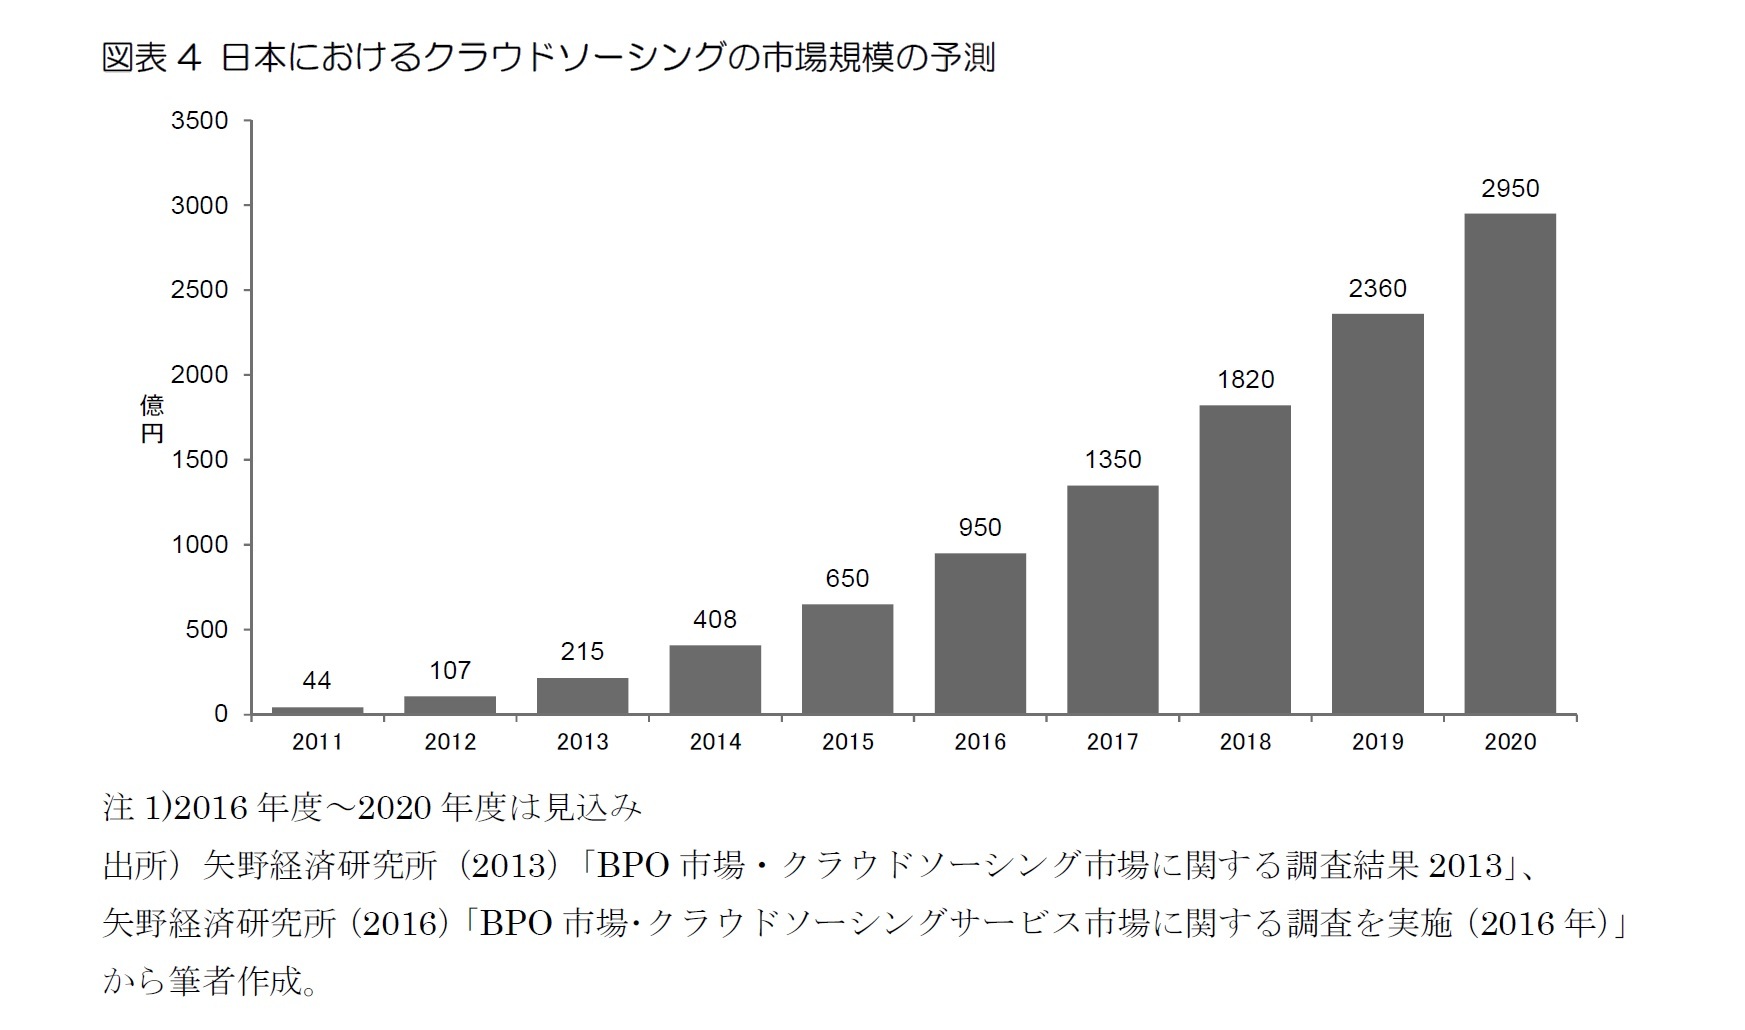 図表4 日本におけるクラウドソーシングの市場規模の予測